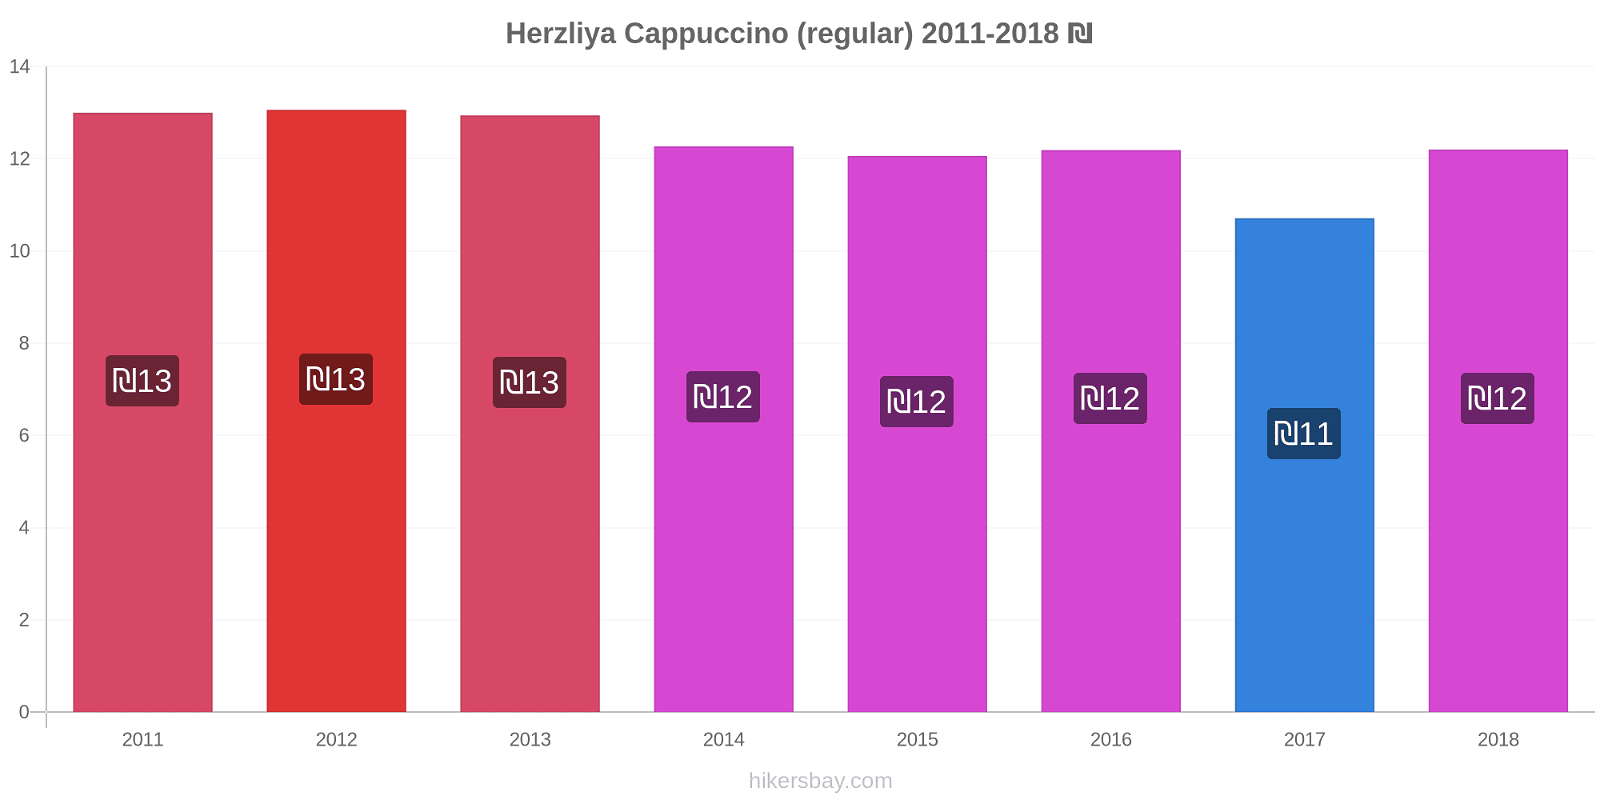 Herzliya price changes Cappuccino (regular) hikersbay.com